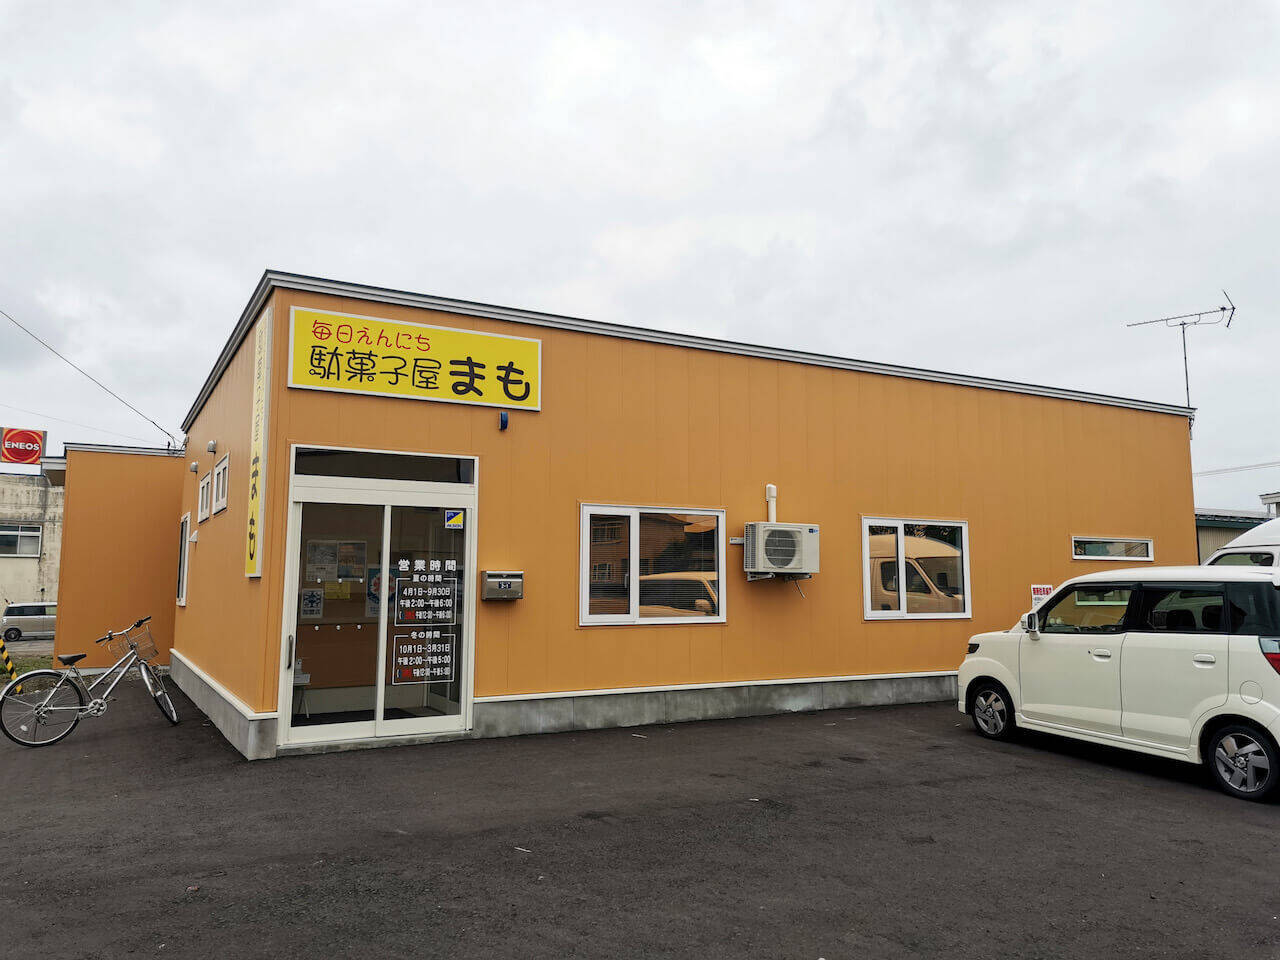 いながきの駄菓子屋探訪68火災で失われた店を再建した「駄菓子屋まも」